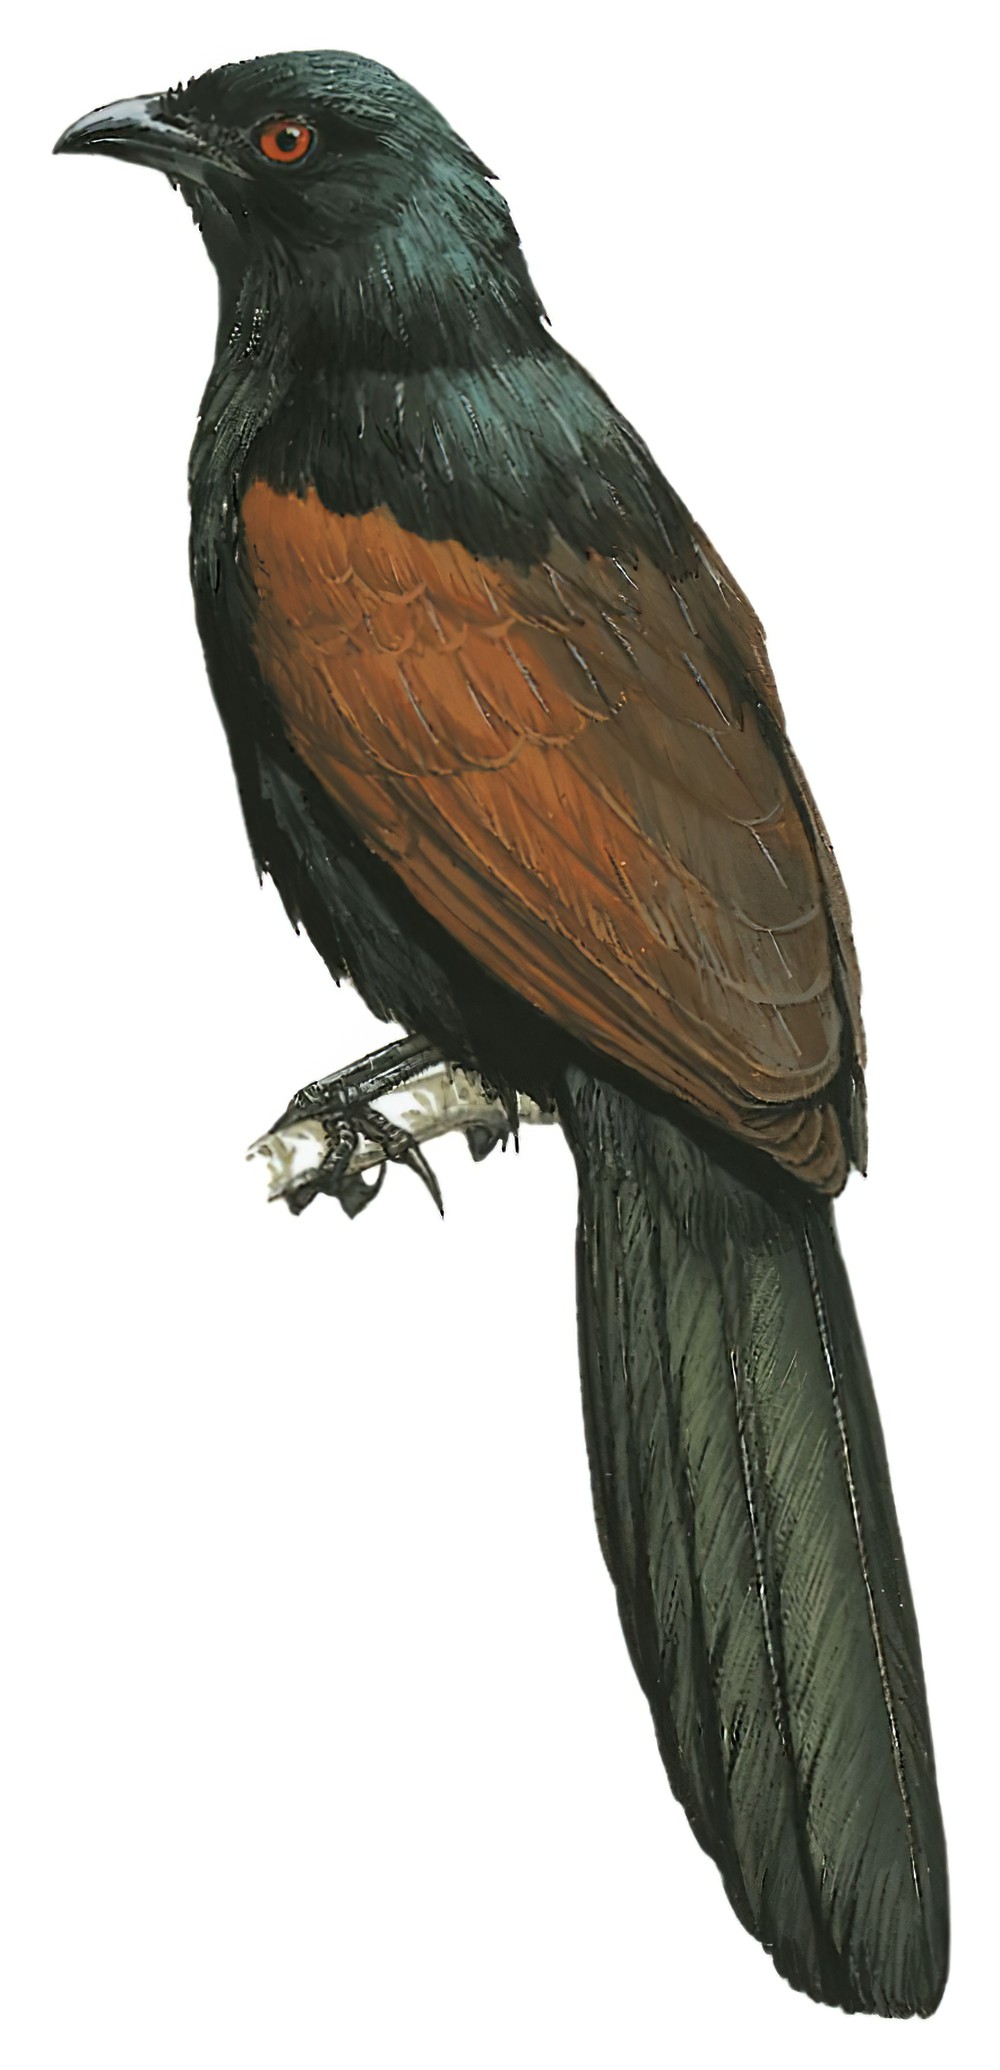 Madagascar Coucal / Centropus toulou